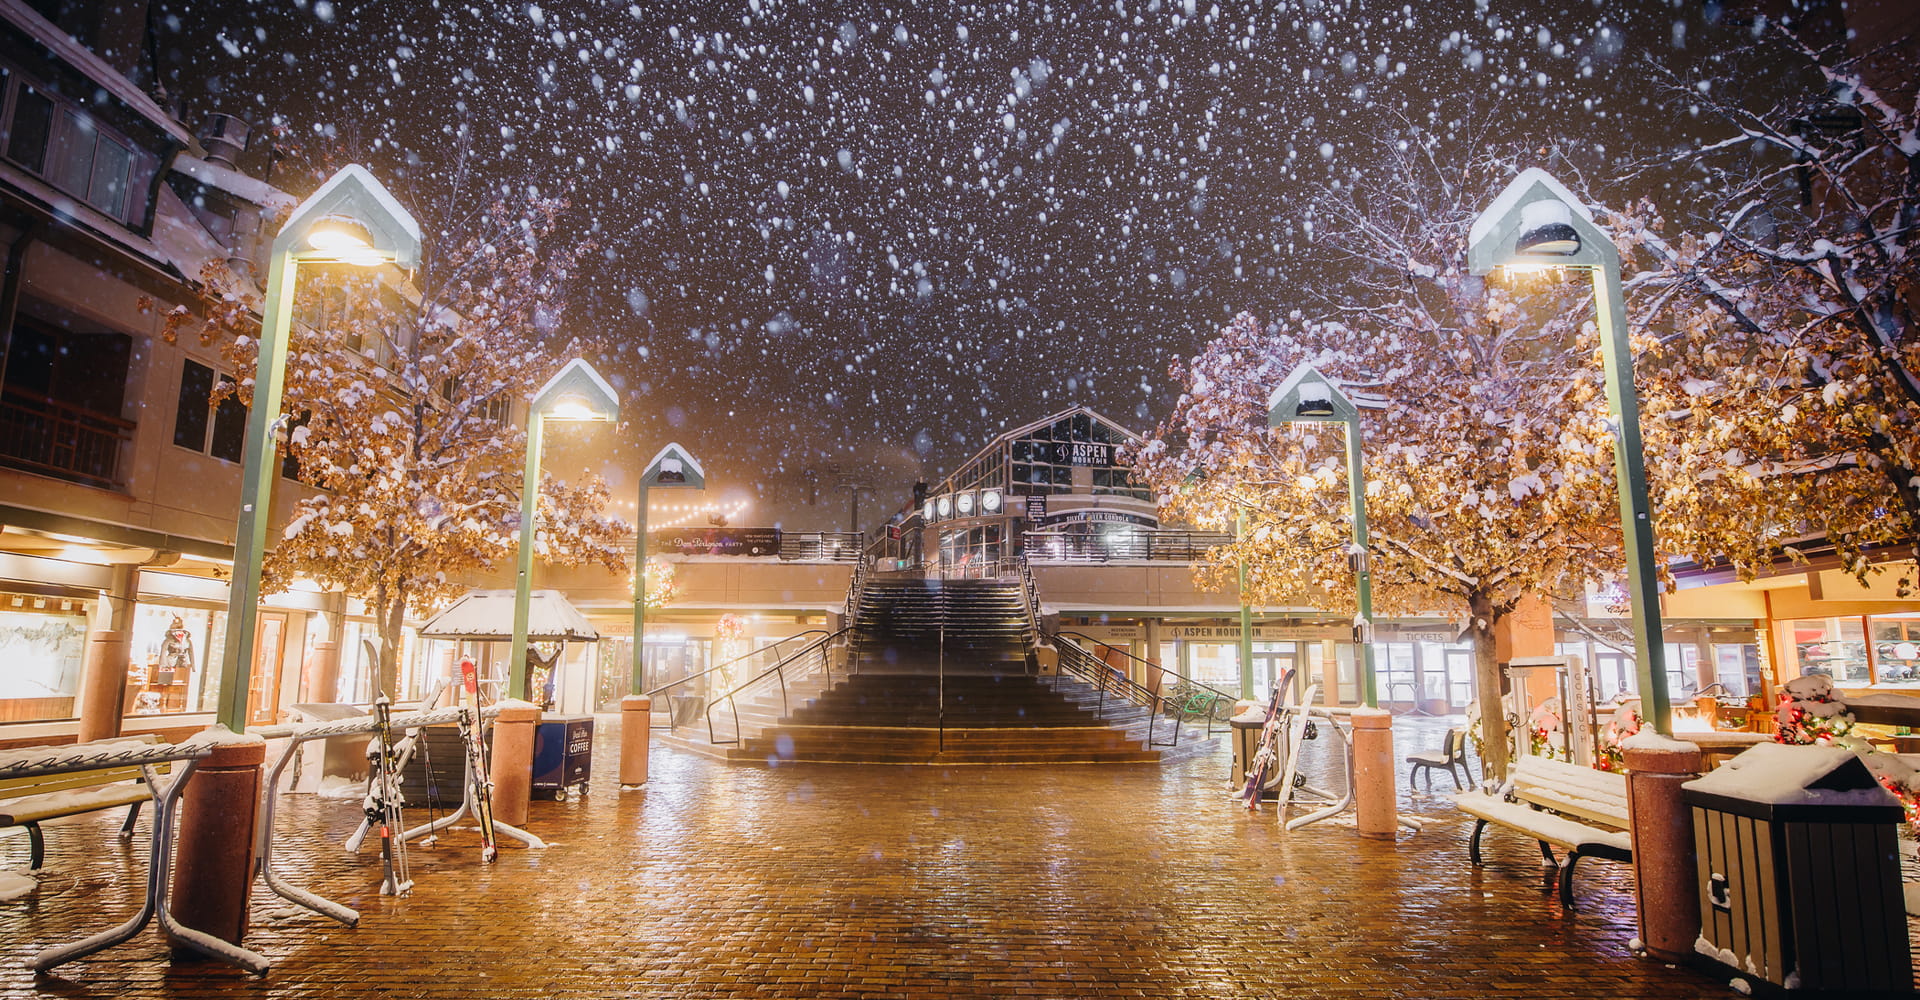 阿斯本山银皇后缆车广场的落雪场景